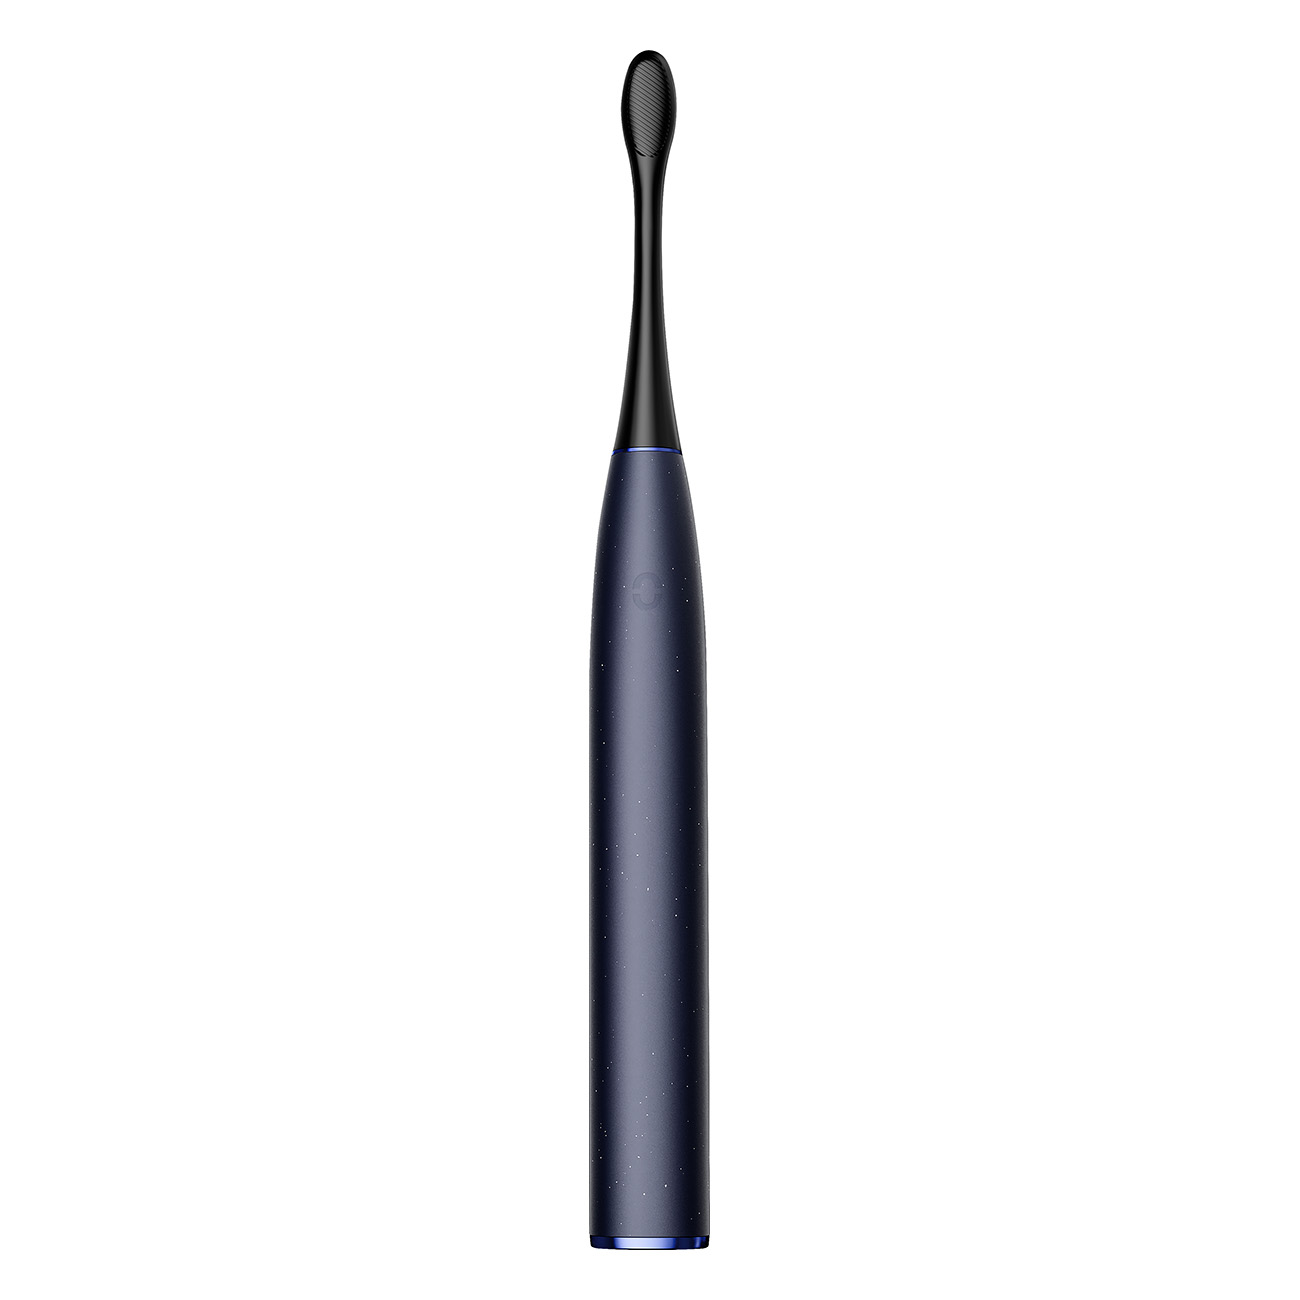 Pro Digital OCLEAN Elektrische X Electric blau Toothbrush Zahnbürste